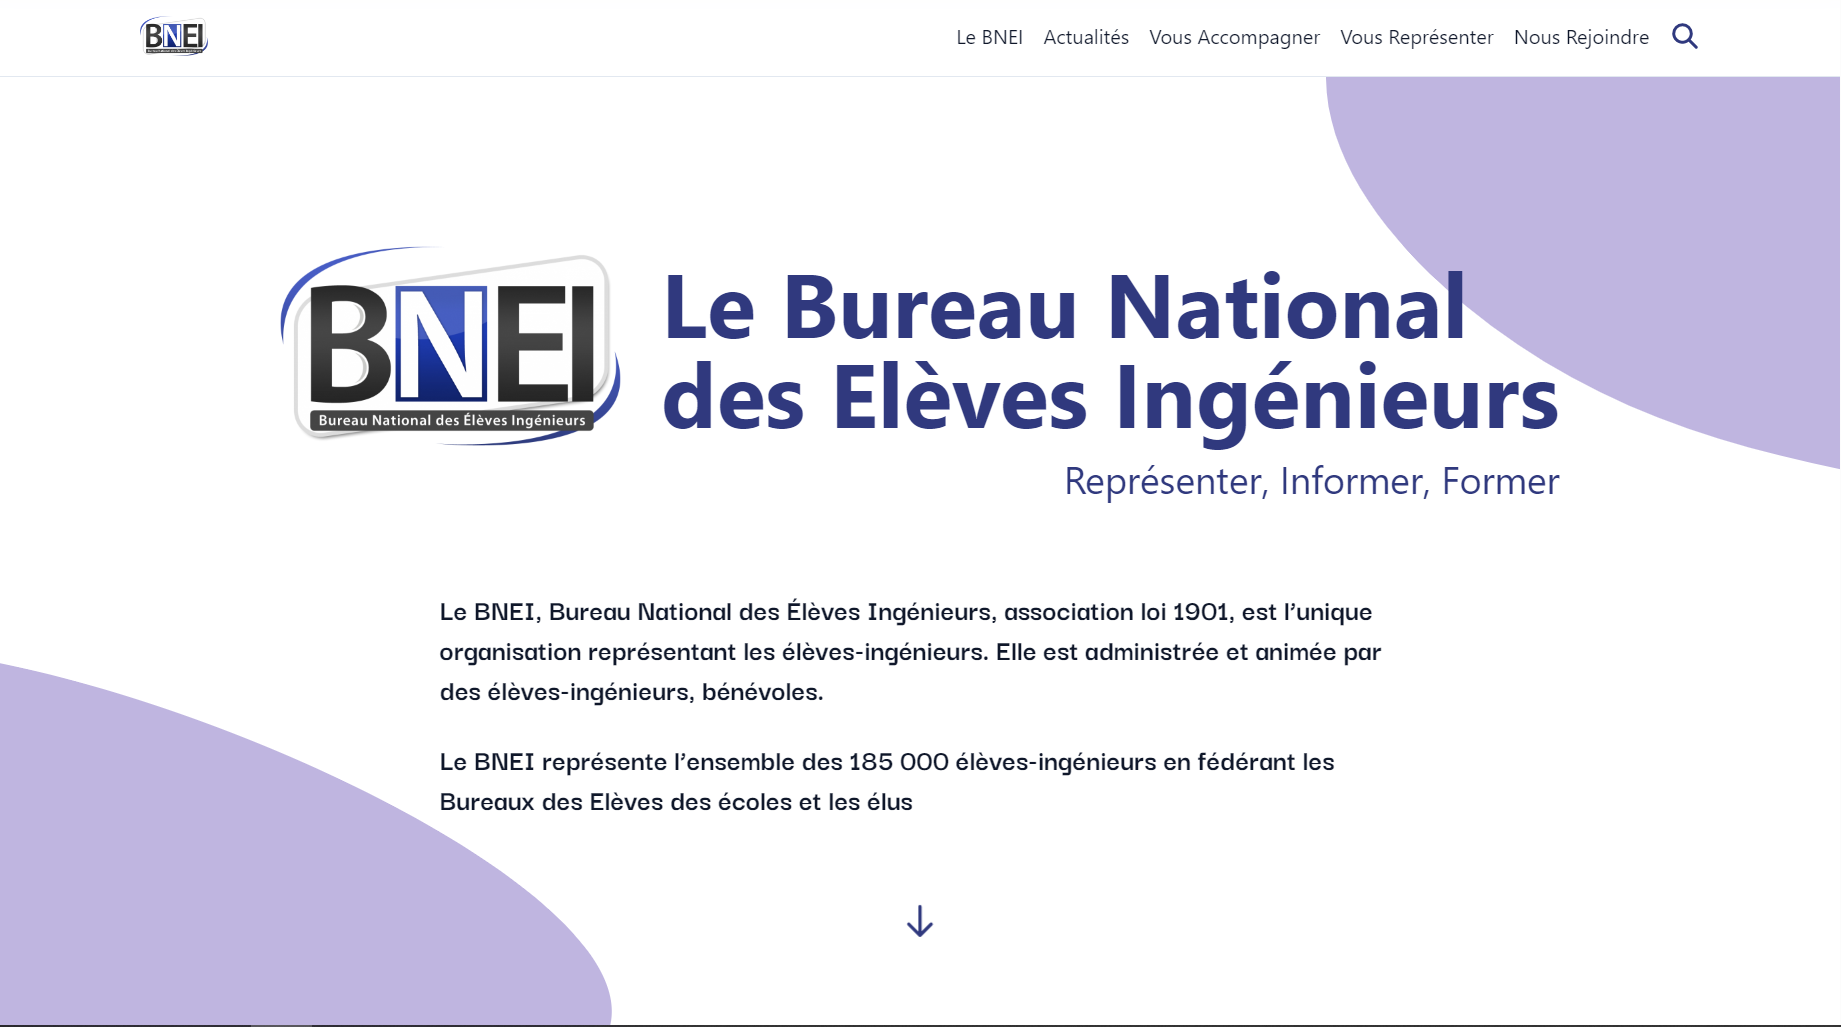 Capture d'écran de la page d'accueil de bnei.fr. On peut y voir un titre "Le Bureau National des Elèves Ingénieurs" et un sous titre "Représenter, Informer, Former"